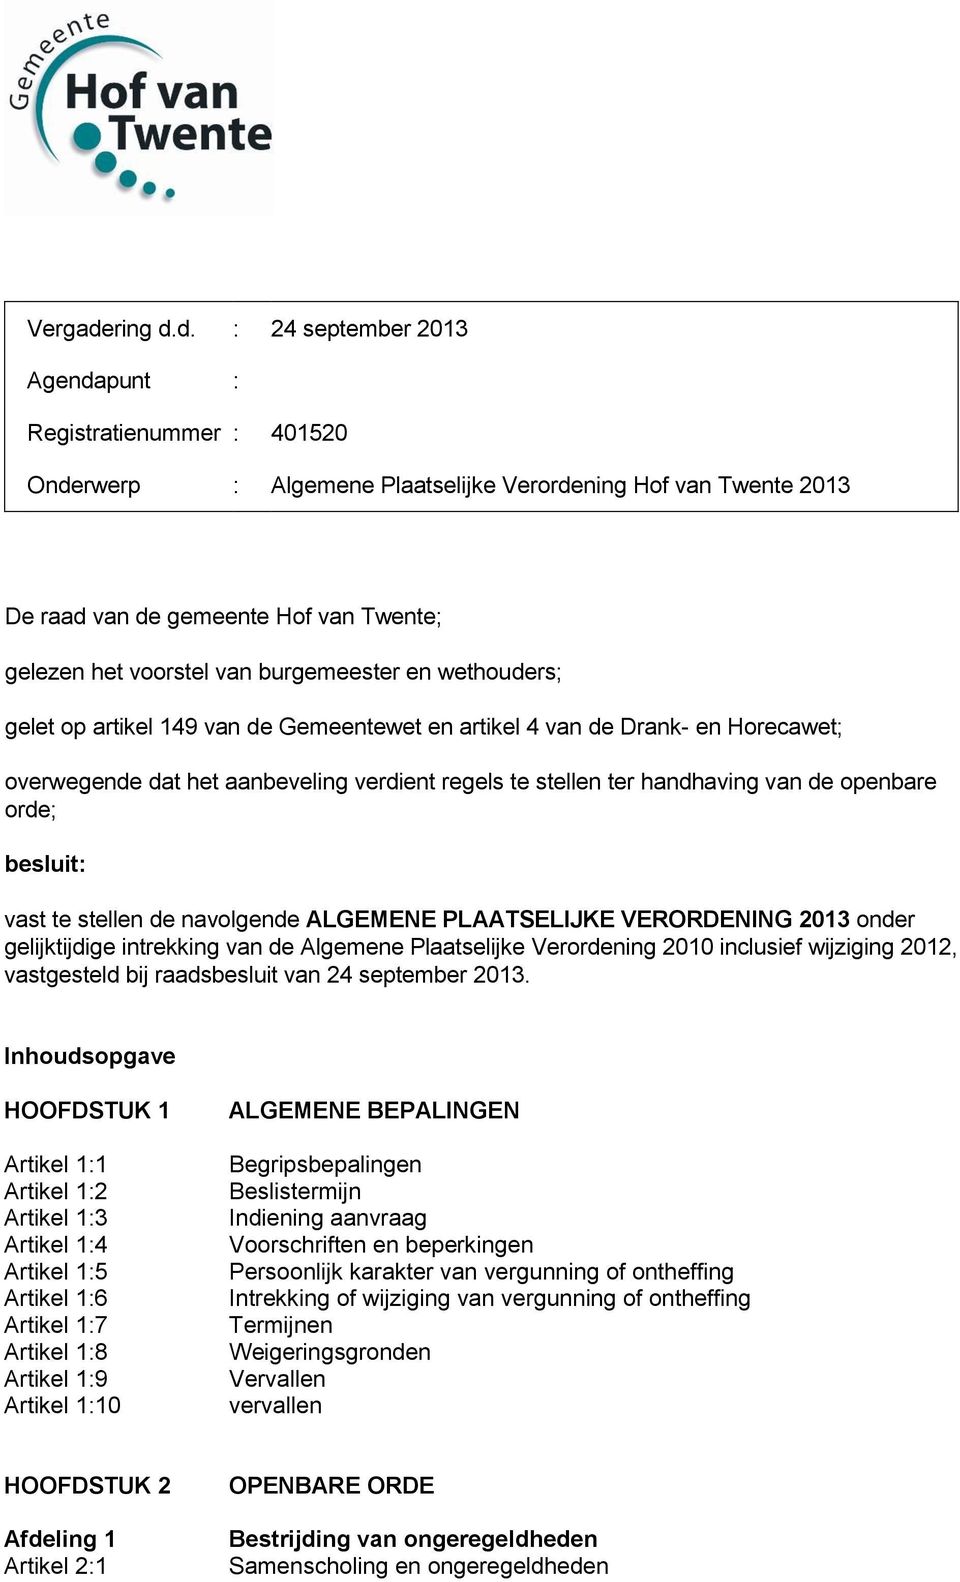 d. : 24 september 2013 Agendapunt : Registratienummer : 401520 Onderwerp : Algemene Plaatselijke Verordening Hof van Twente 2013 De raad van de gemeente Hof van Twente; gelezen het voorstel van